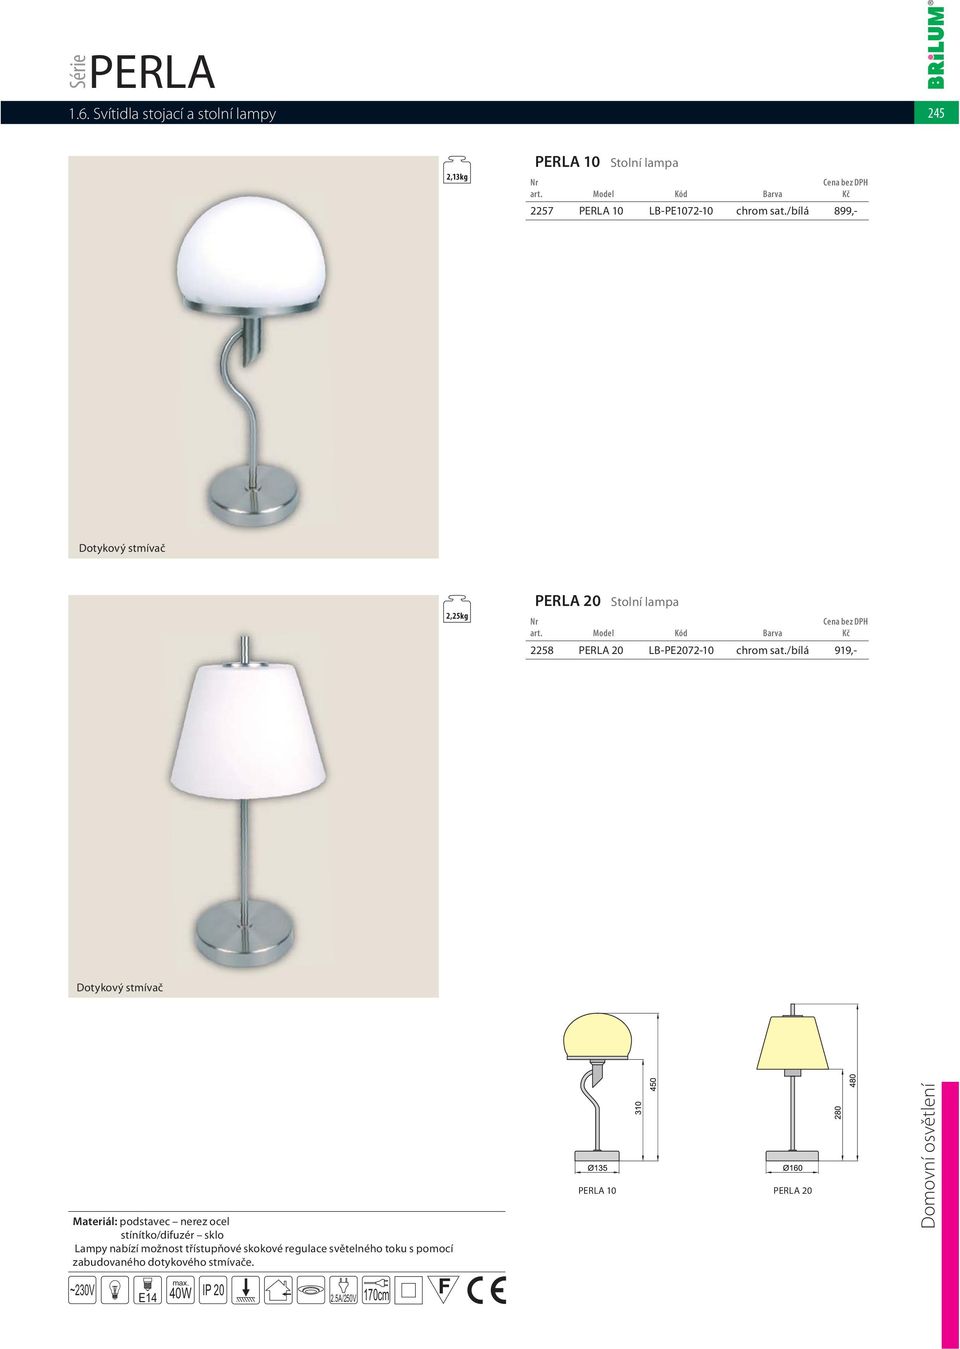 /bílá 919,- Dotykový stmívač Materiál: podstavec nerez ocel stínítko/difuzér sklo Lampy nabízí možnost